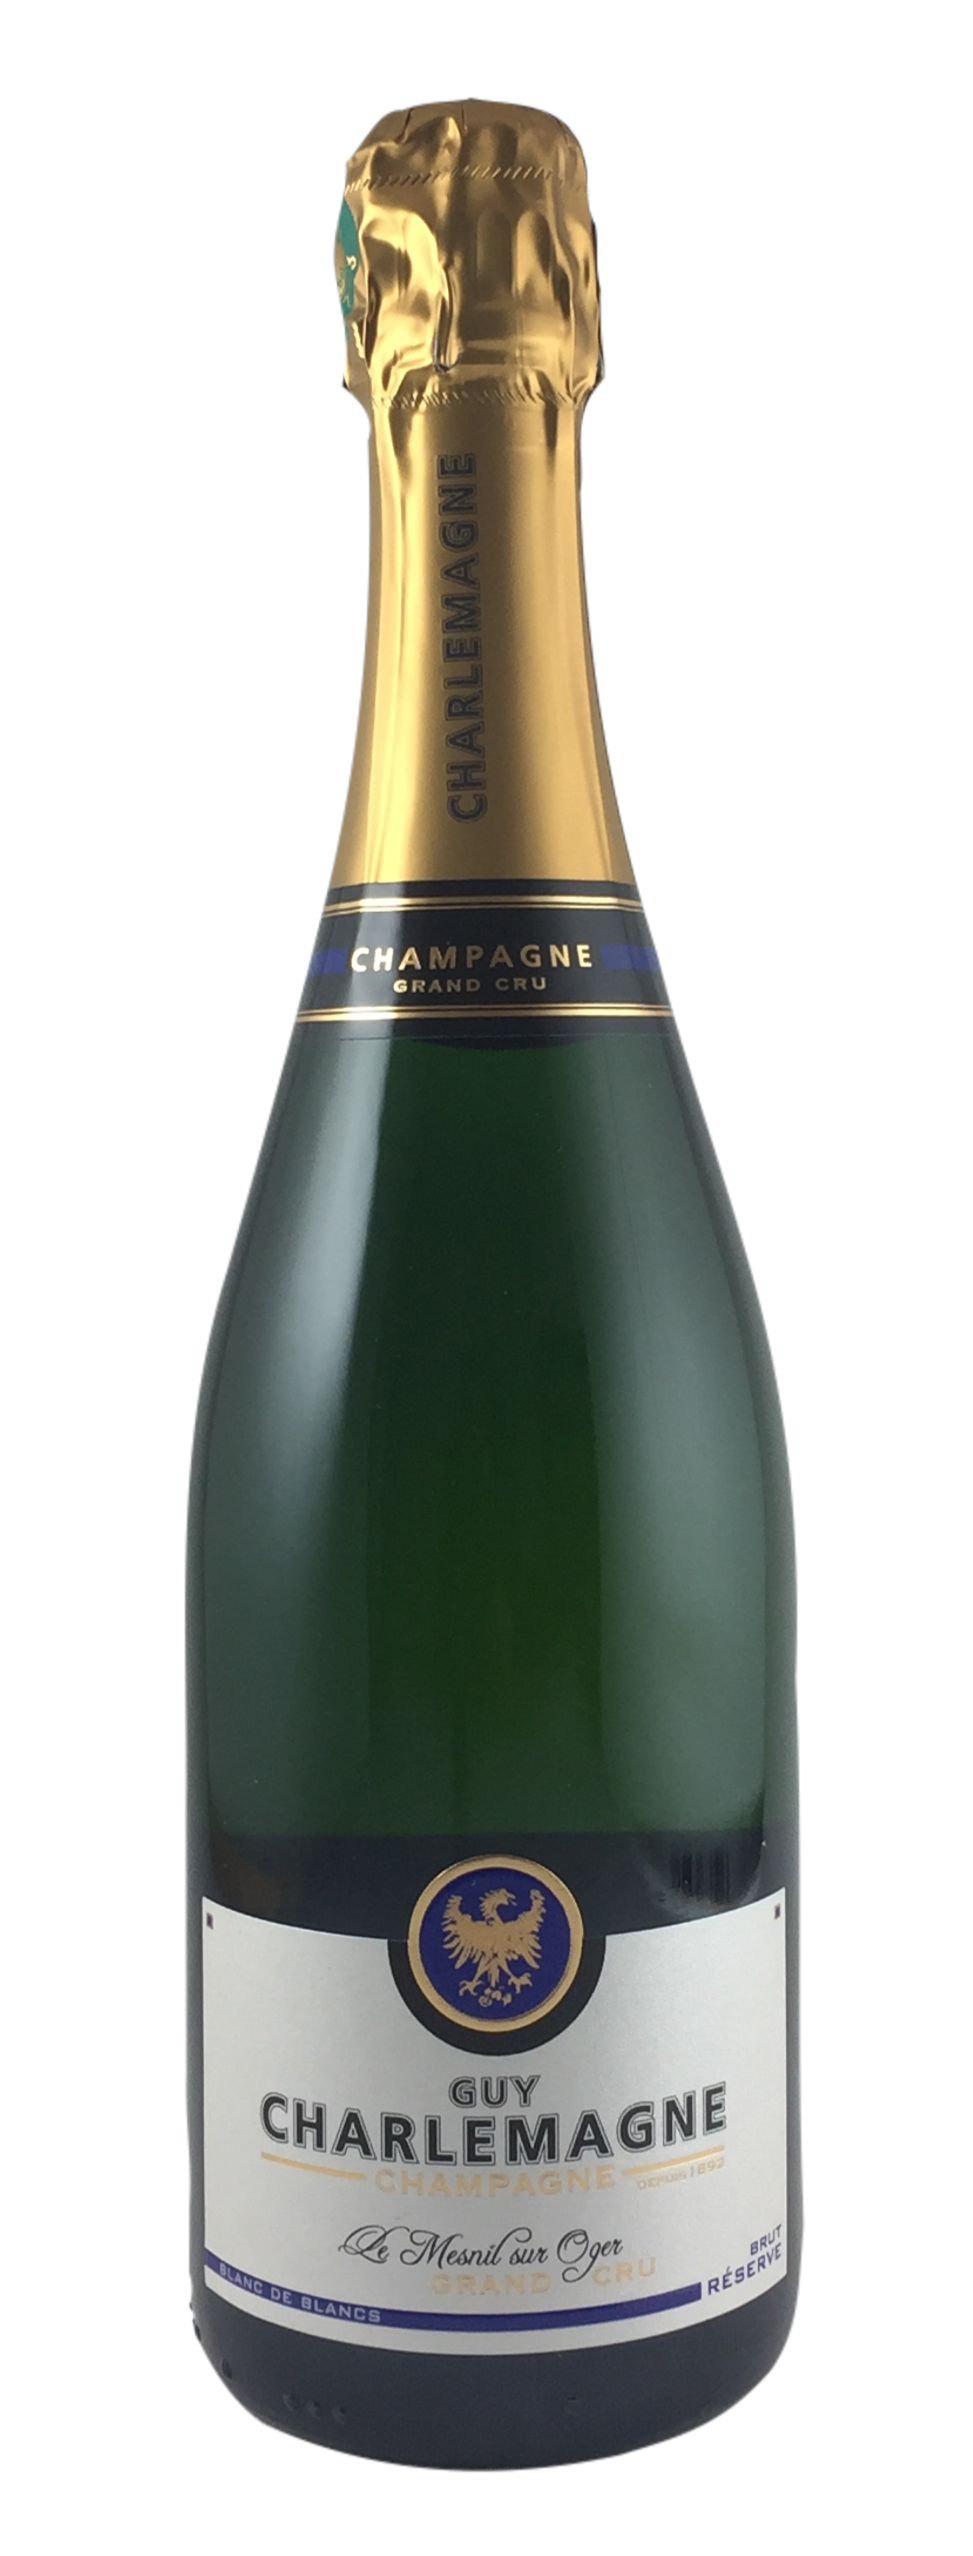 Champagne Guy Charlemagne - Blanc de Blanc Reserve brut